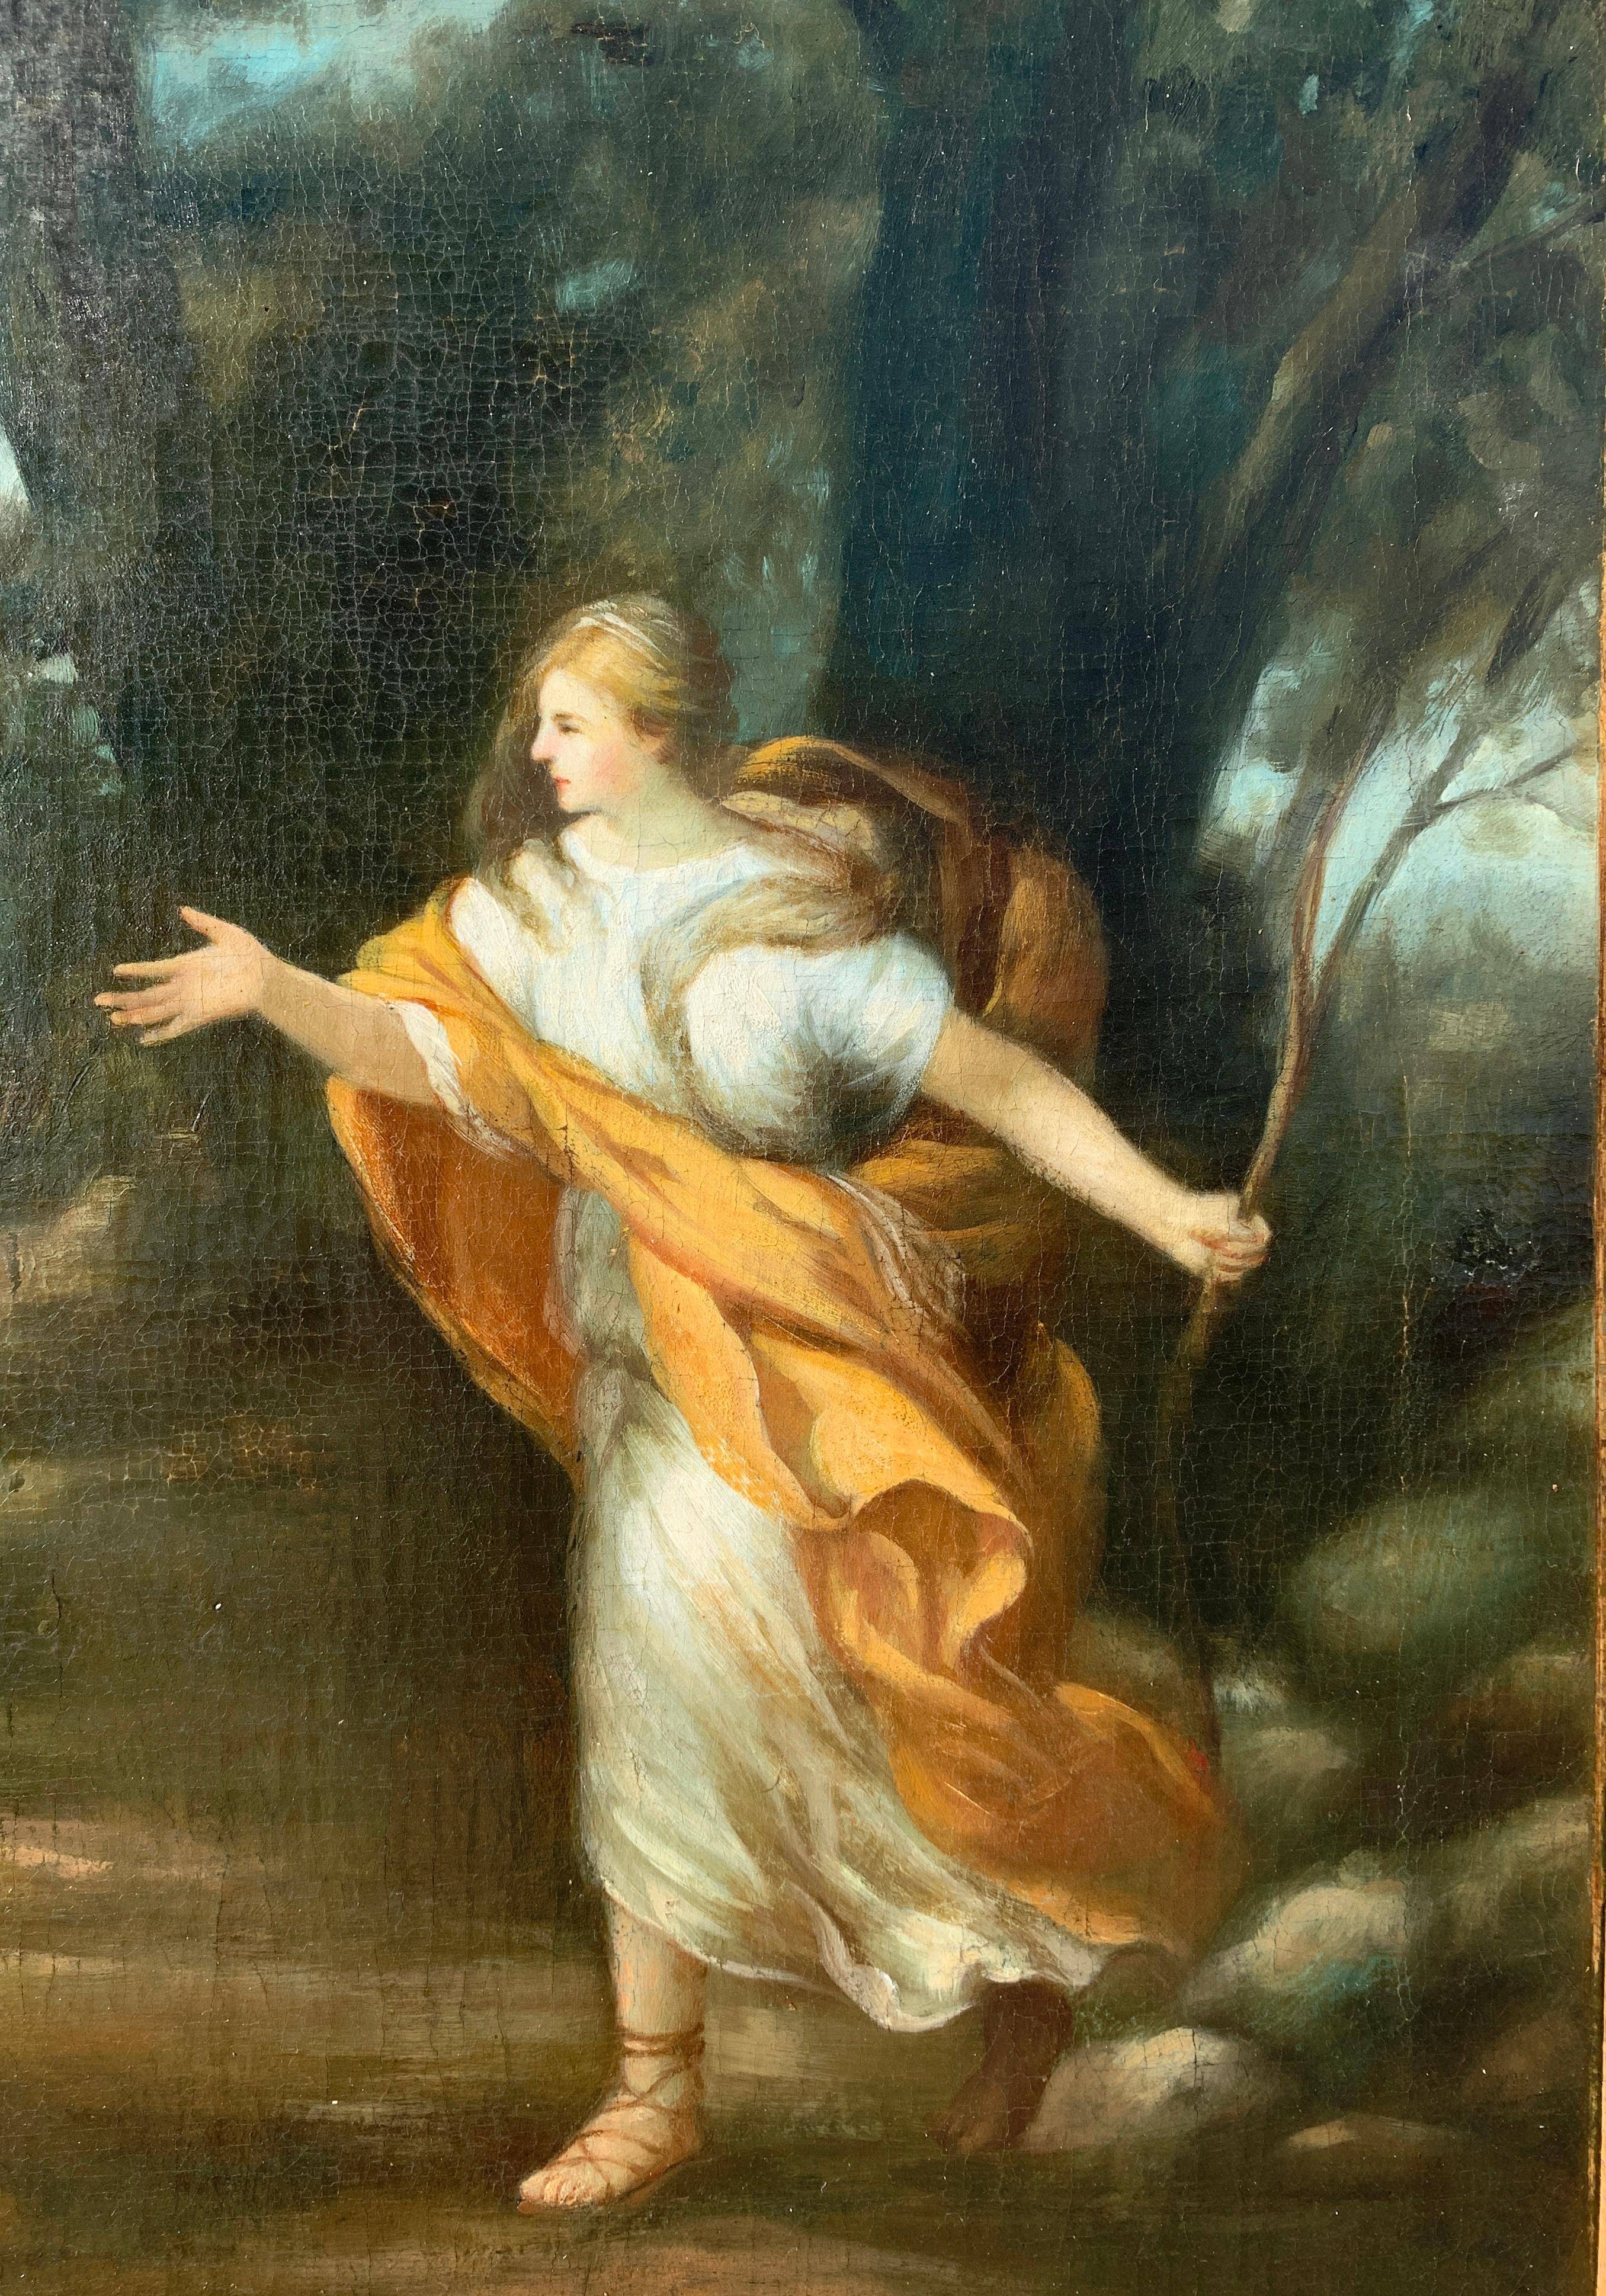 Suiveur de Pietro da Cortona (XVIIIe-XIXe siècle) - Vénus apparaît à Énée sous les traits d'une chasseresse.

50 x 60 cm sans cadre, 80,5 x 90 cm avec cadre.

Peinture à l'huile ancienne sur toile, dans un cadre en bois sculpté.

État des lieux :